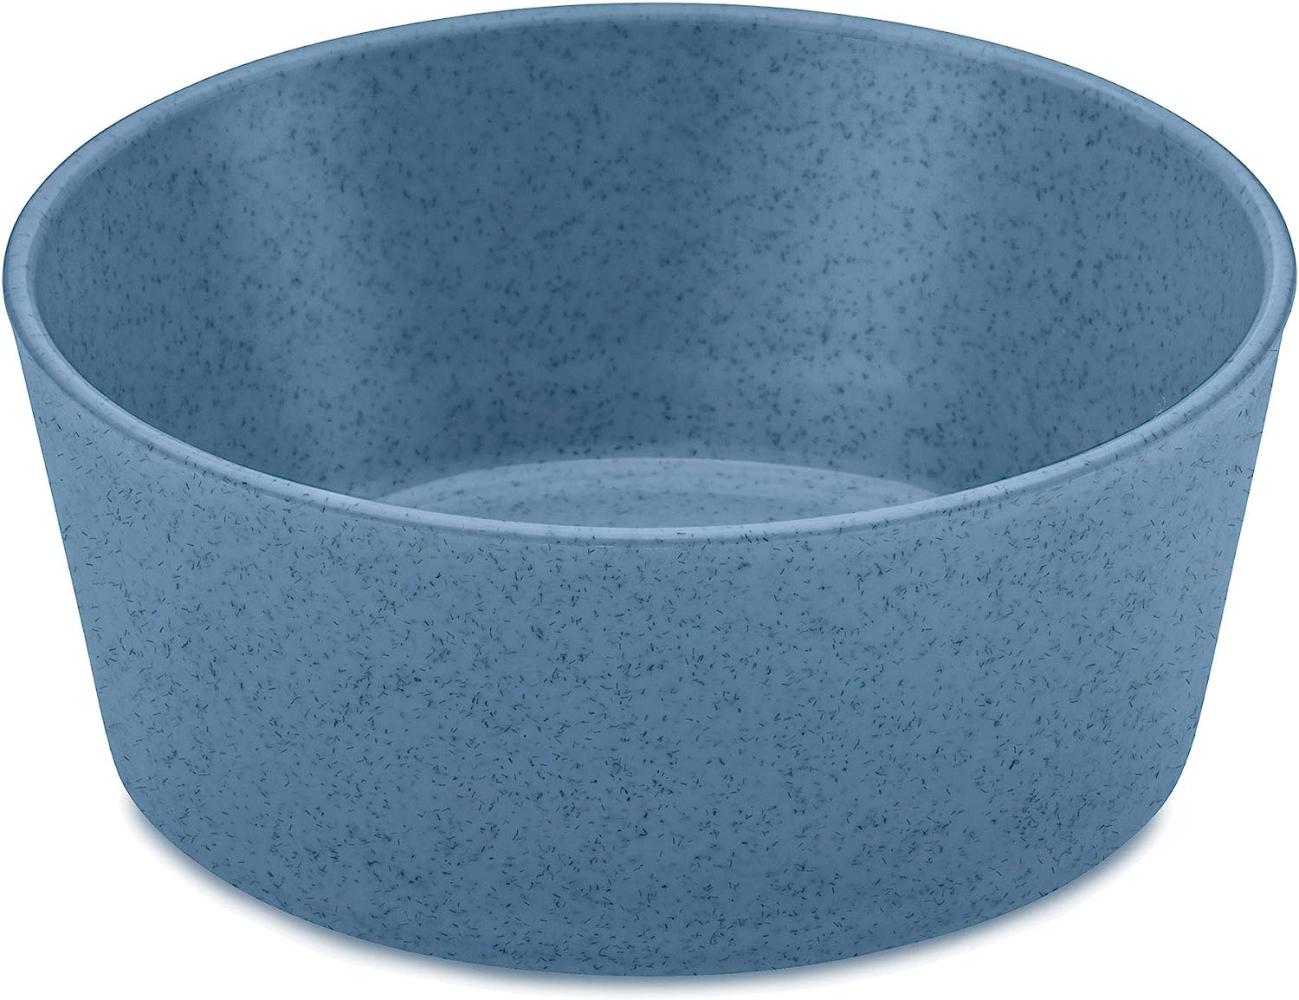 Koziol Schale Connect, Schüssel, Schälchen, Bowl, Thermoplastischer Kunststoff, Organic Deep Blue, 400 ml, 3102675 Bild 1